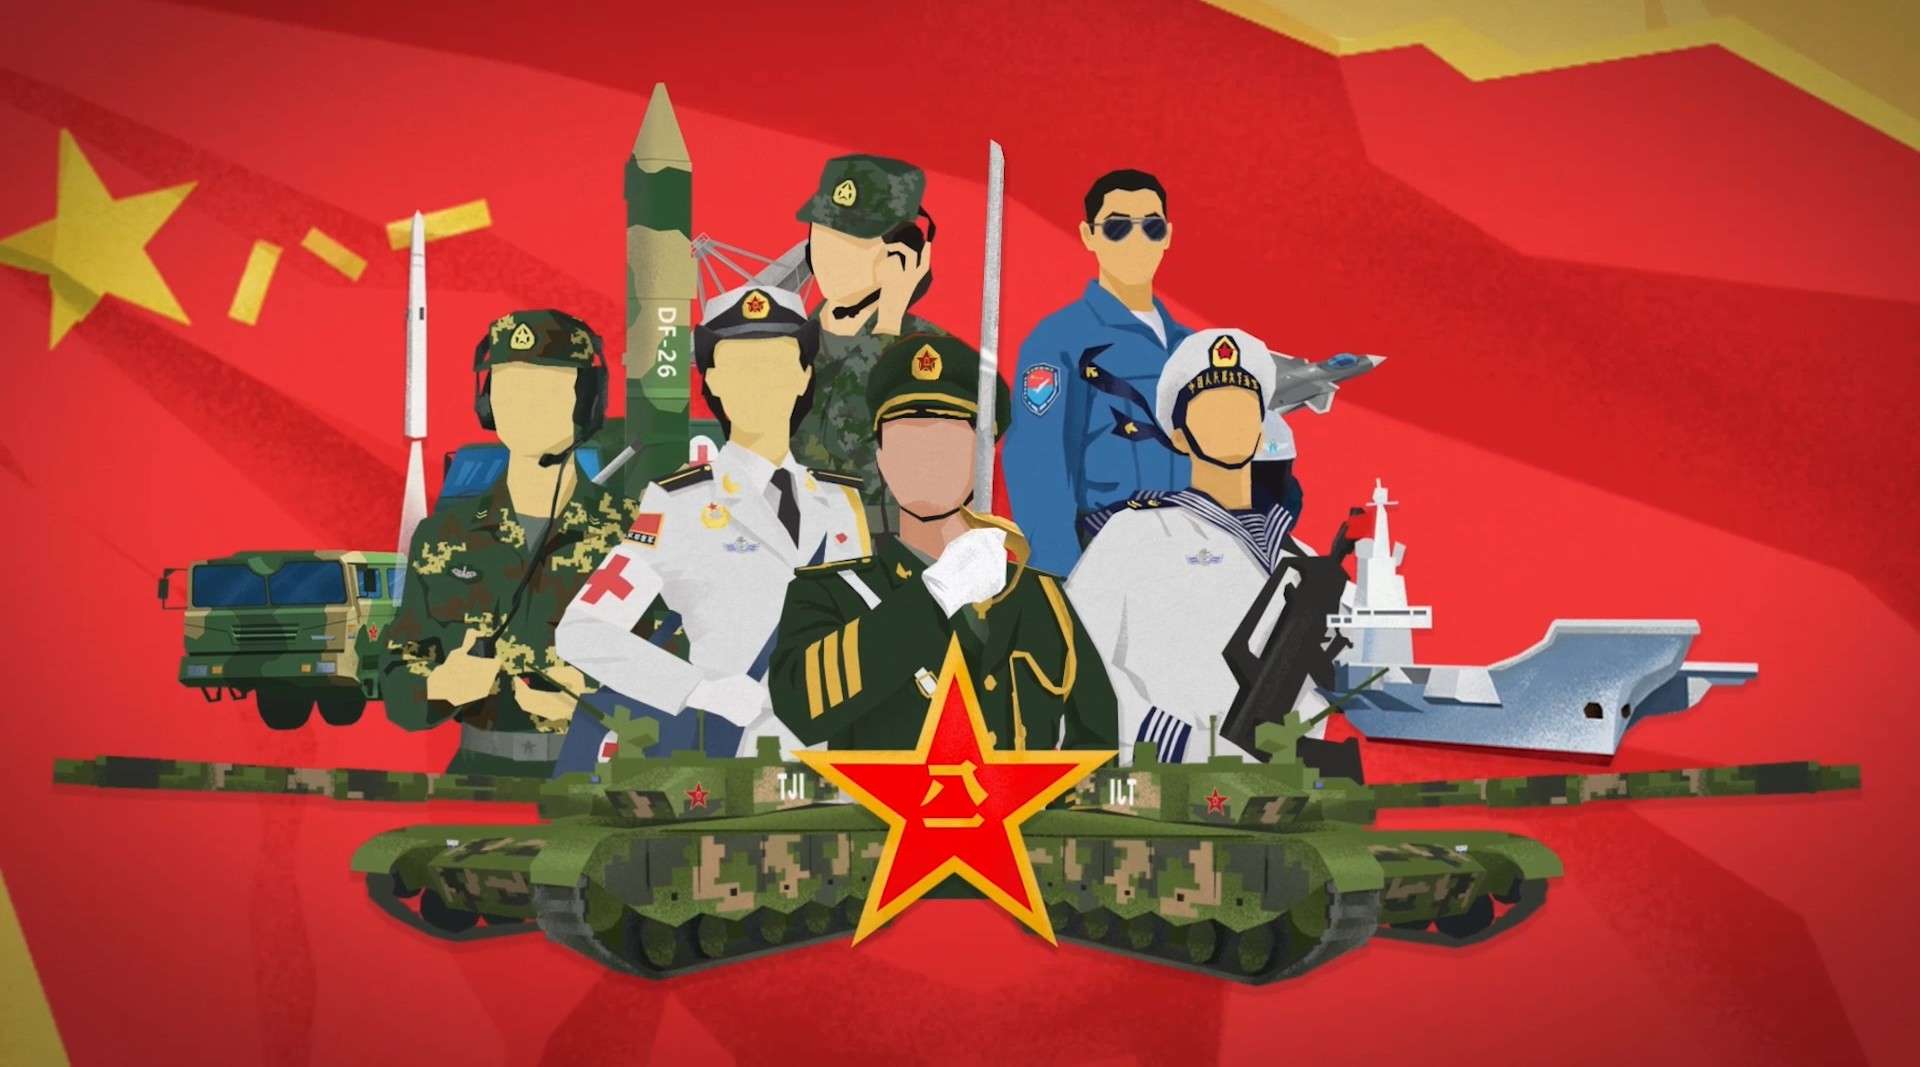 《和平利刃》首部全方位解读人民军队的动画短片